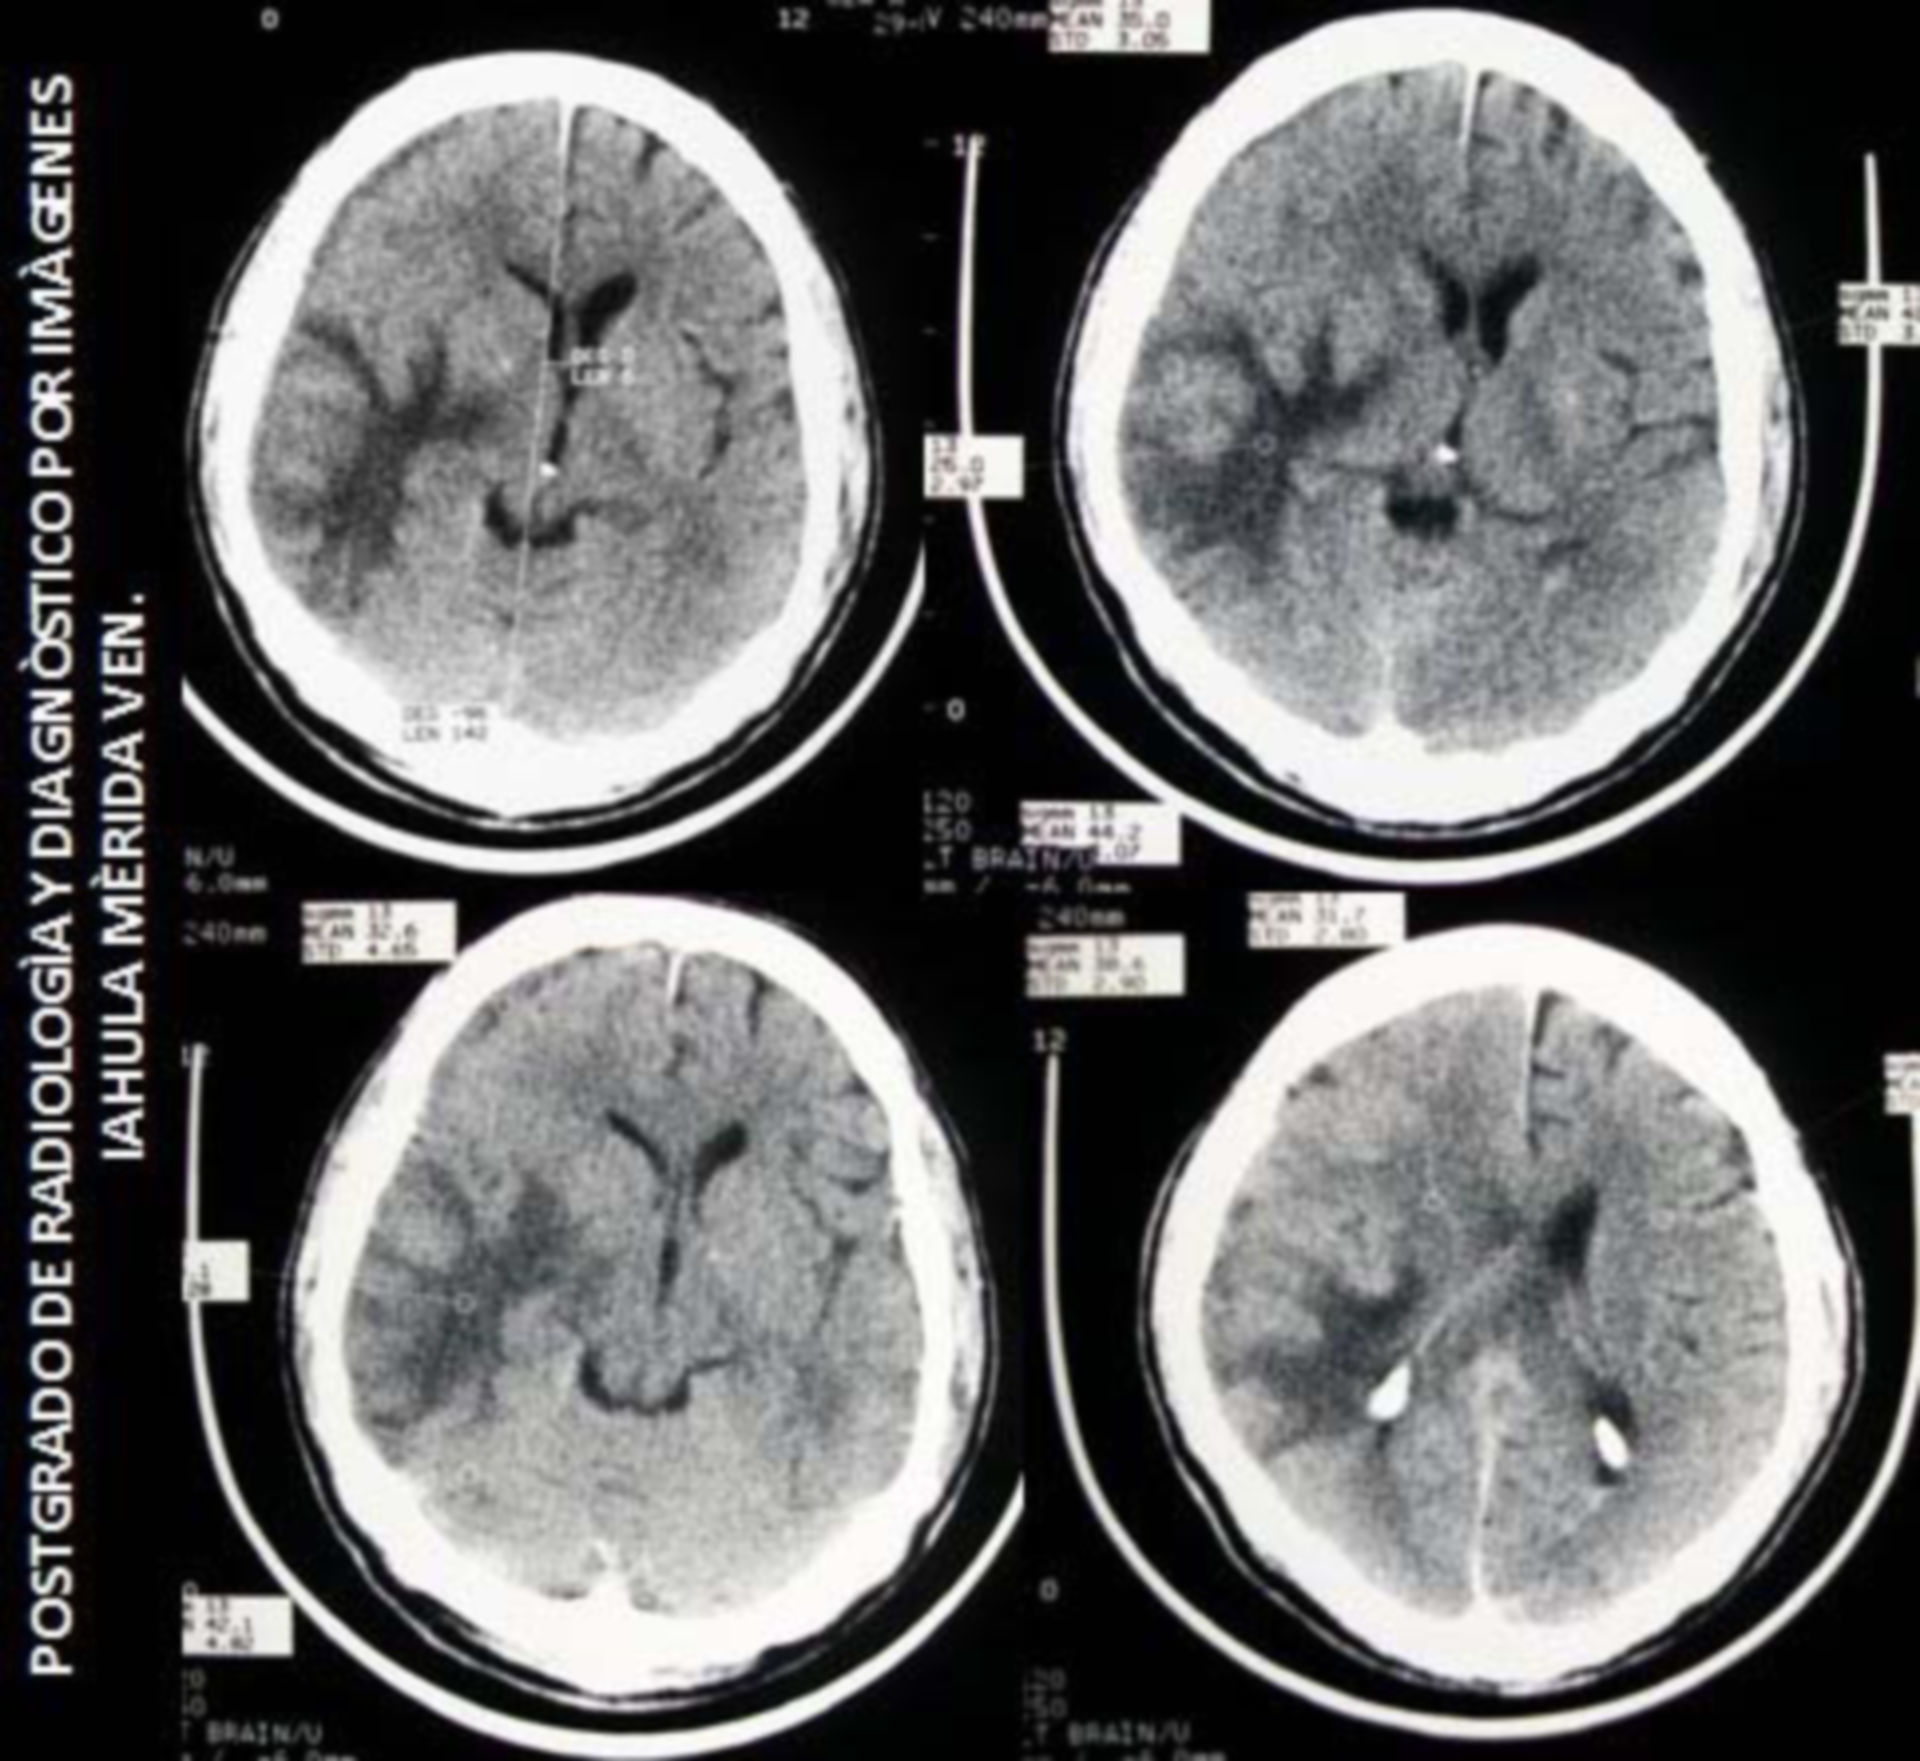 Brain hematoma